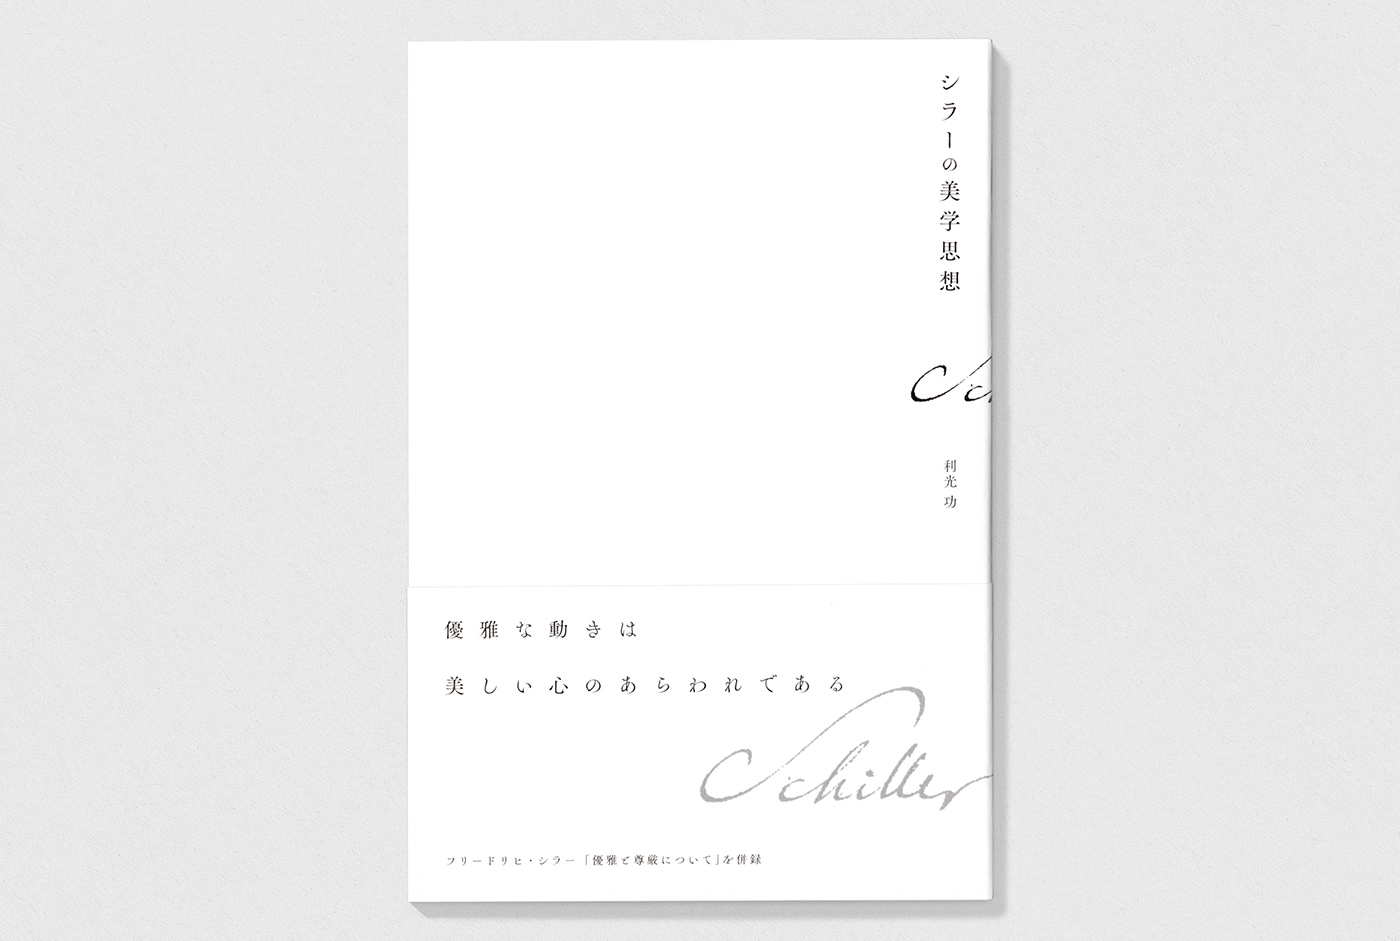 book design graphic design  schiller